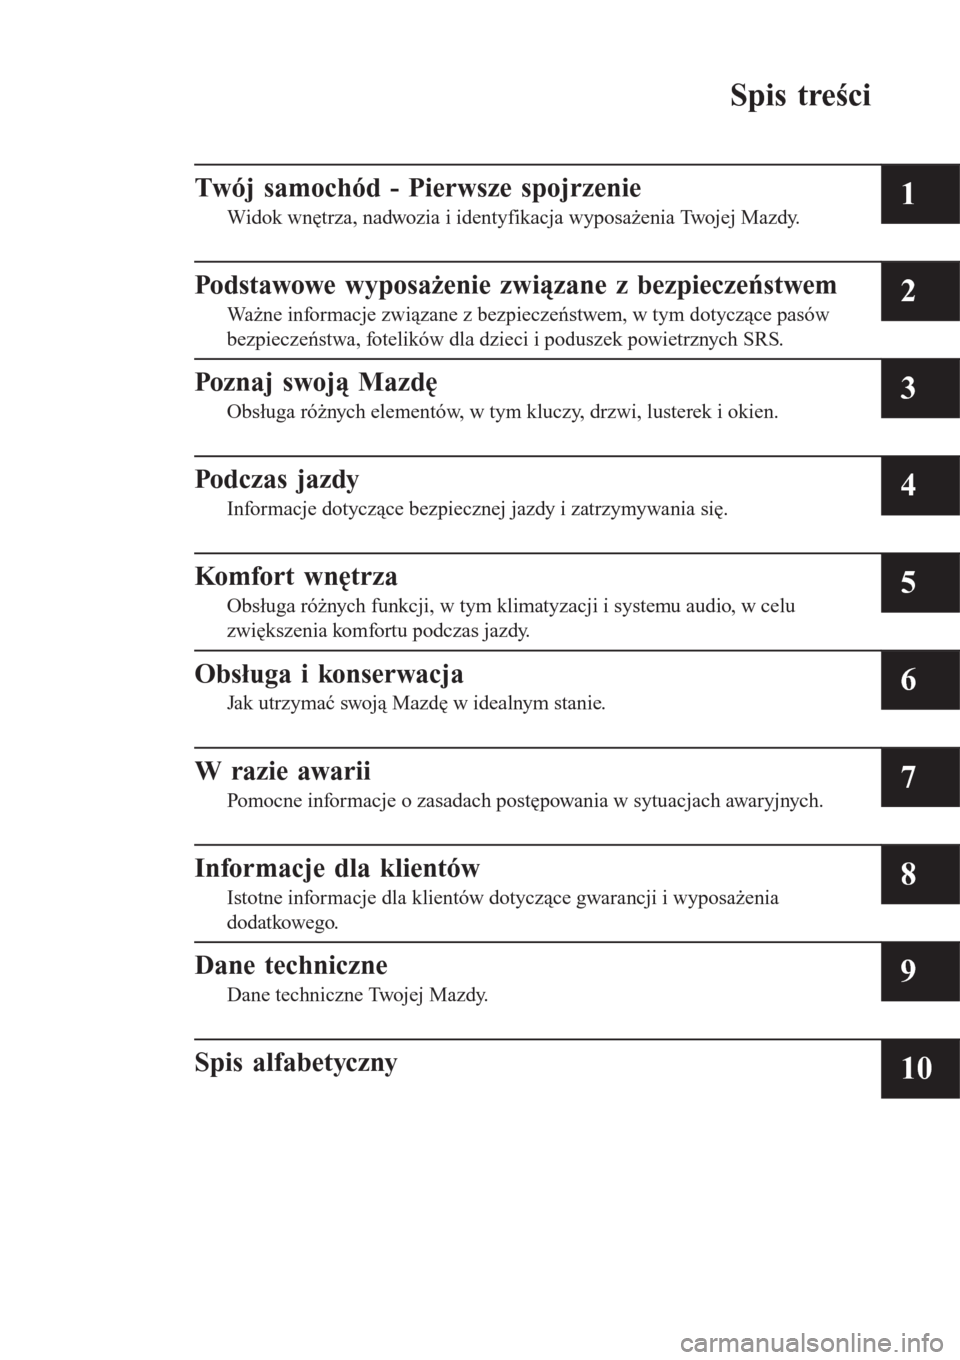 MAZDA MODEL CX-3 2015  Instrukcja Obsługi (in Polish) Spis treści
Twój samochód - Pierwsze spojrzenie
Widok wnętrza, nadwozia i identyfikacja wyposażenia Twojej Mazdy.1
Podstawowe wyposażenie związane z bezpieczeństwem
Ważne informacje związane